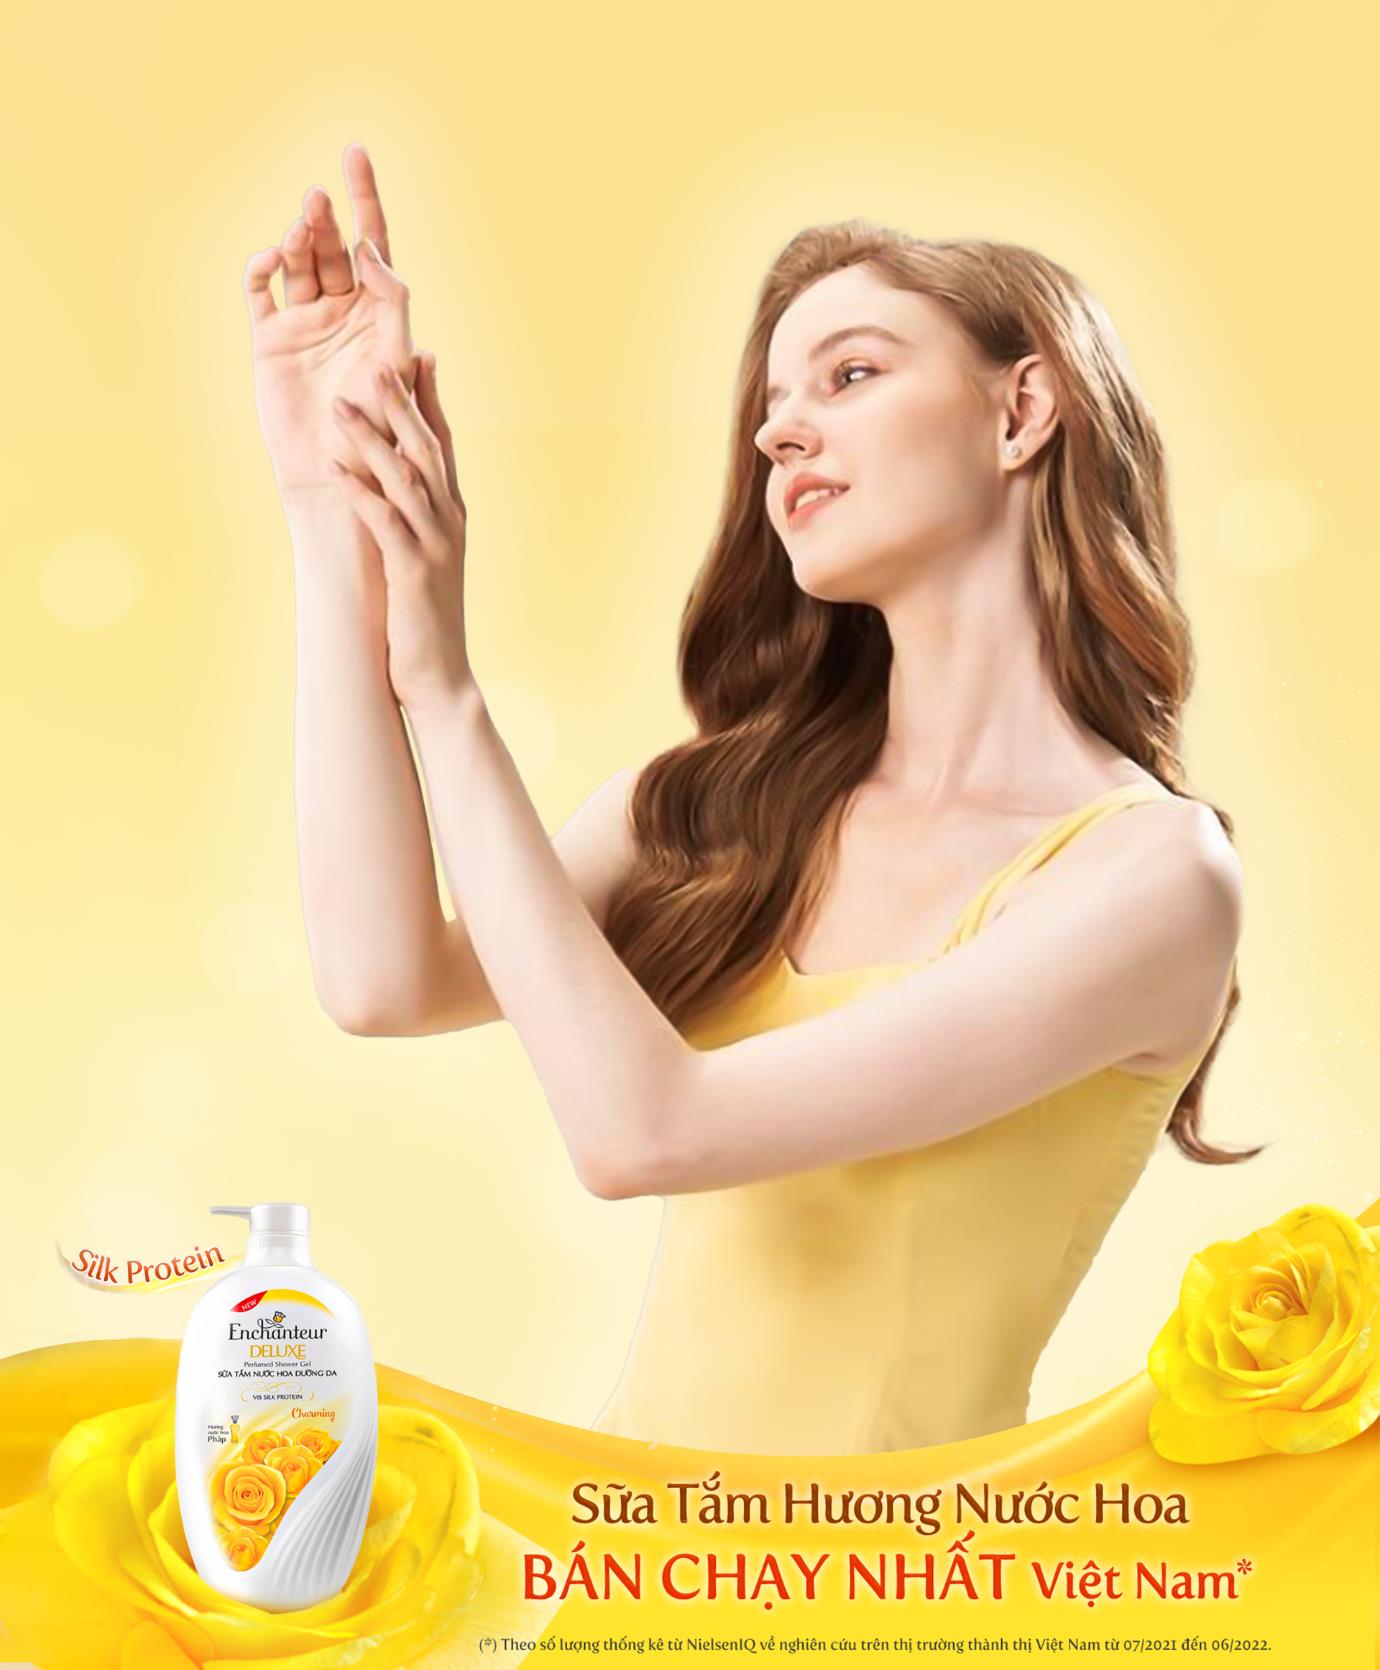 Bí mật đằng sau nhãn hiệu sữa tắm hương nước hoa bán chạy nhất Việt Nam - Ảnh 2.